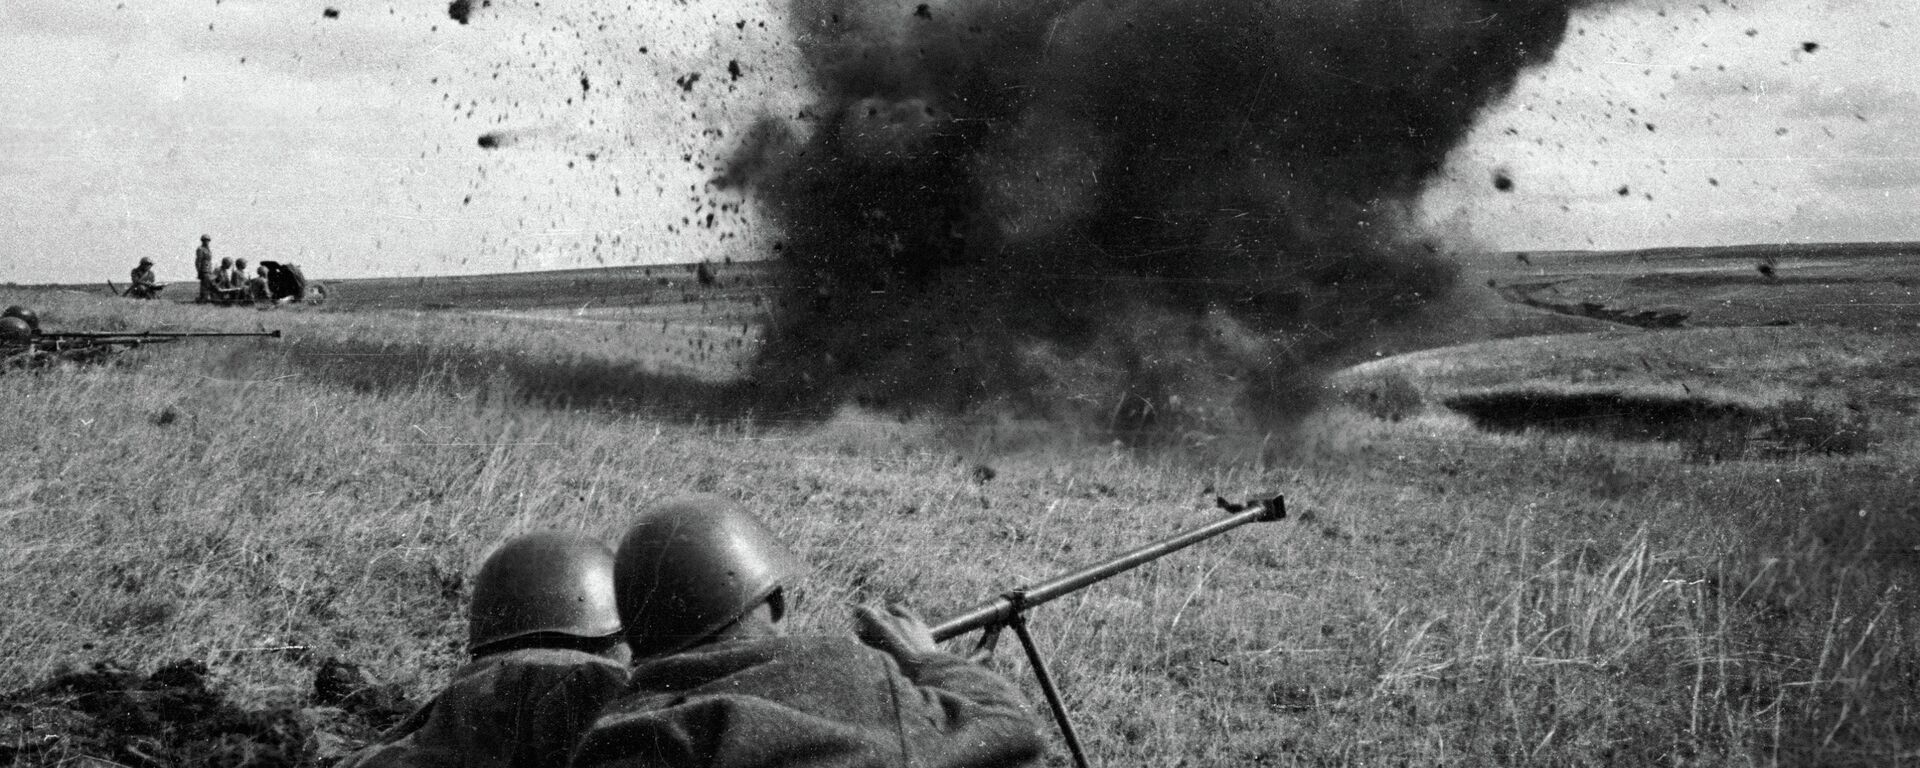 Los soviéticos ganaron la batalla de Kursk sin tener una superioridad importante de fuerzas - Sputnik Mundo, 1920, 05.07.2013